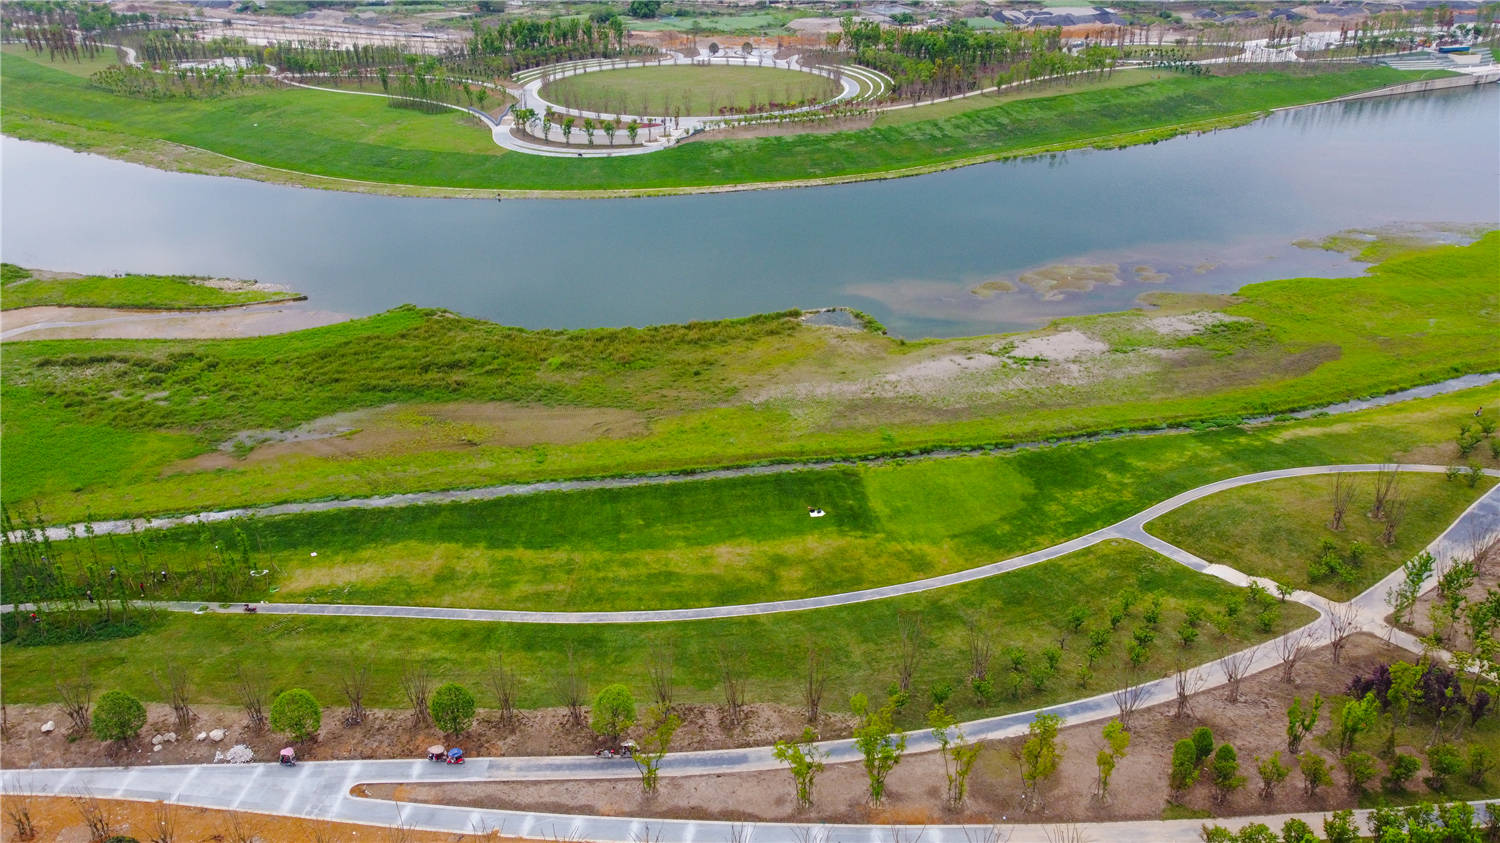 科技城新区安昌河生态湿地景观见雏形!